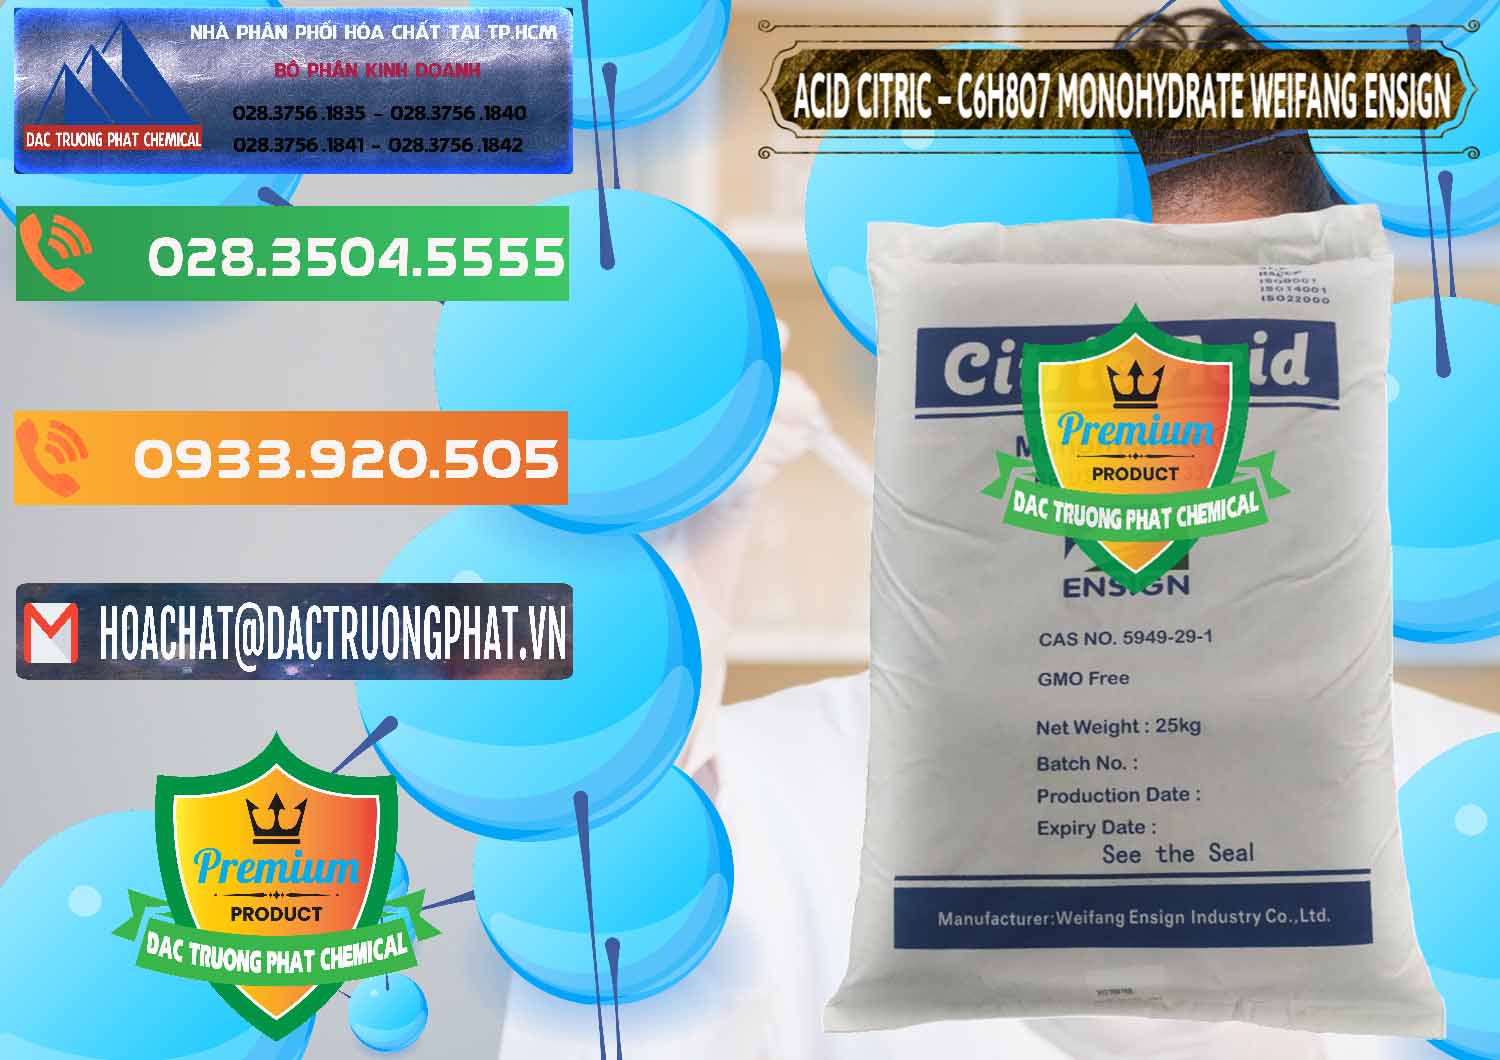 Công ty chuyên bán _ cung cấp Acid Citric - Axit Citric Monohydrate Weifang Trung Quốc China - 0009 - Đơn vị chuyên cung cấp _ nhập khẩu hóa chất tại TP.HCM - hoachatxulynuoc.com.vn